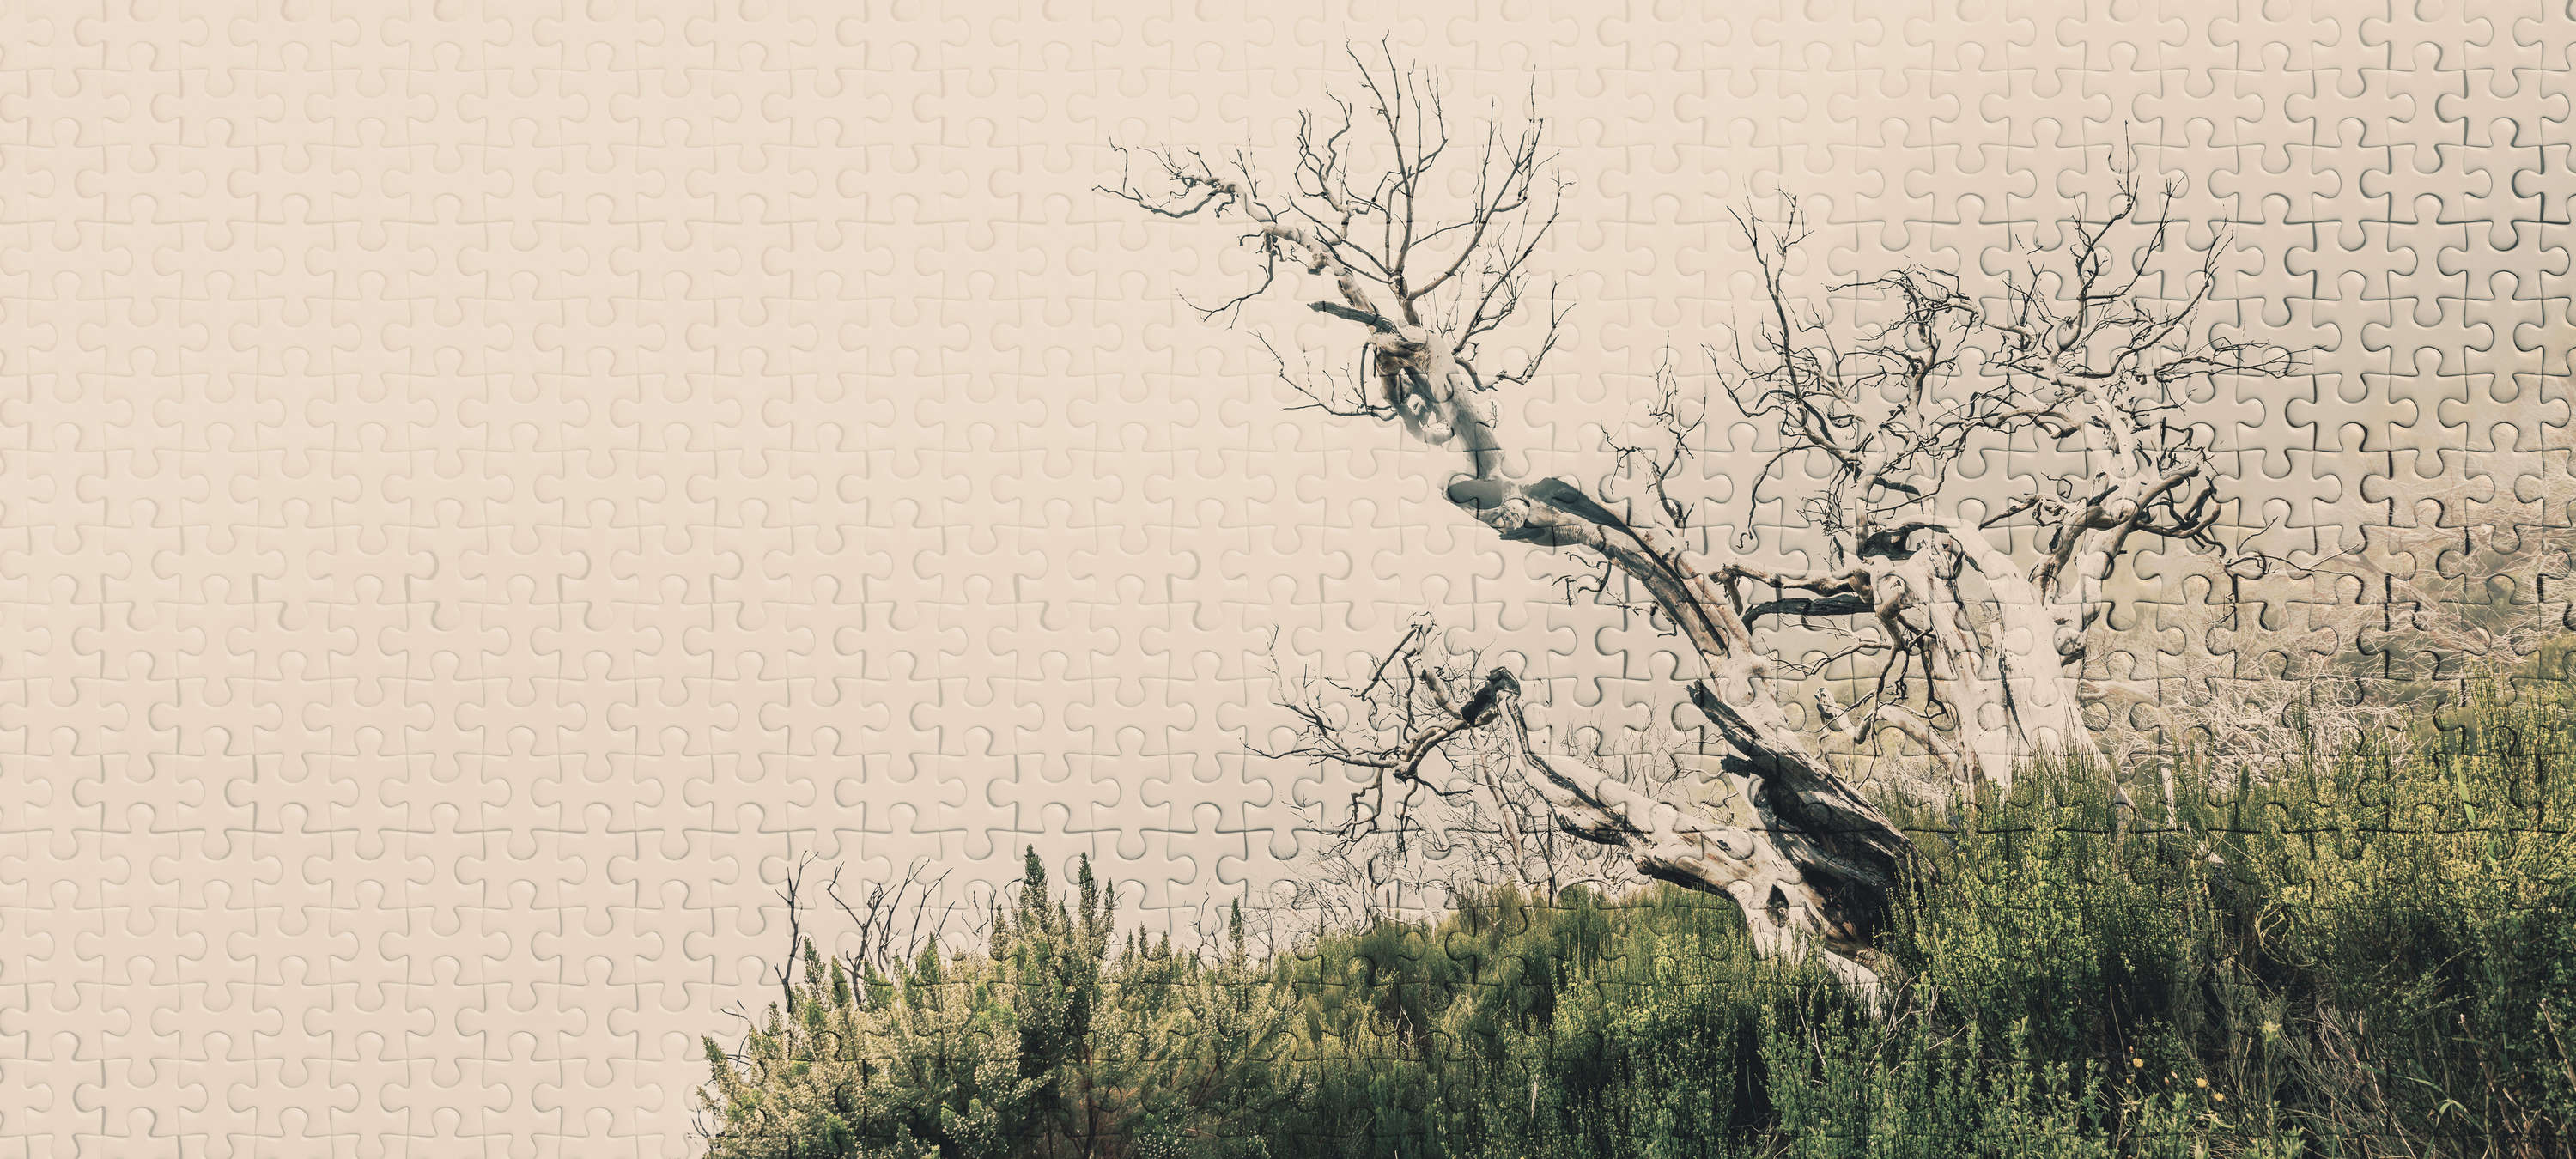             Puzzle-Fototapete mit Baum-Motiv und Puzzleteilen – Grün, Braun, Beige
        